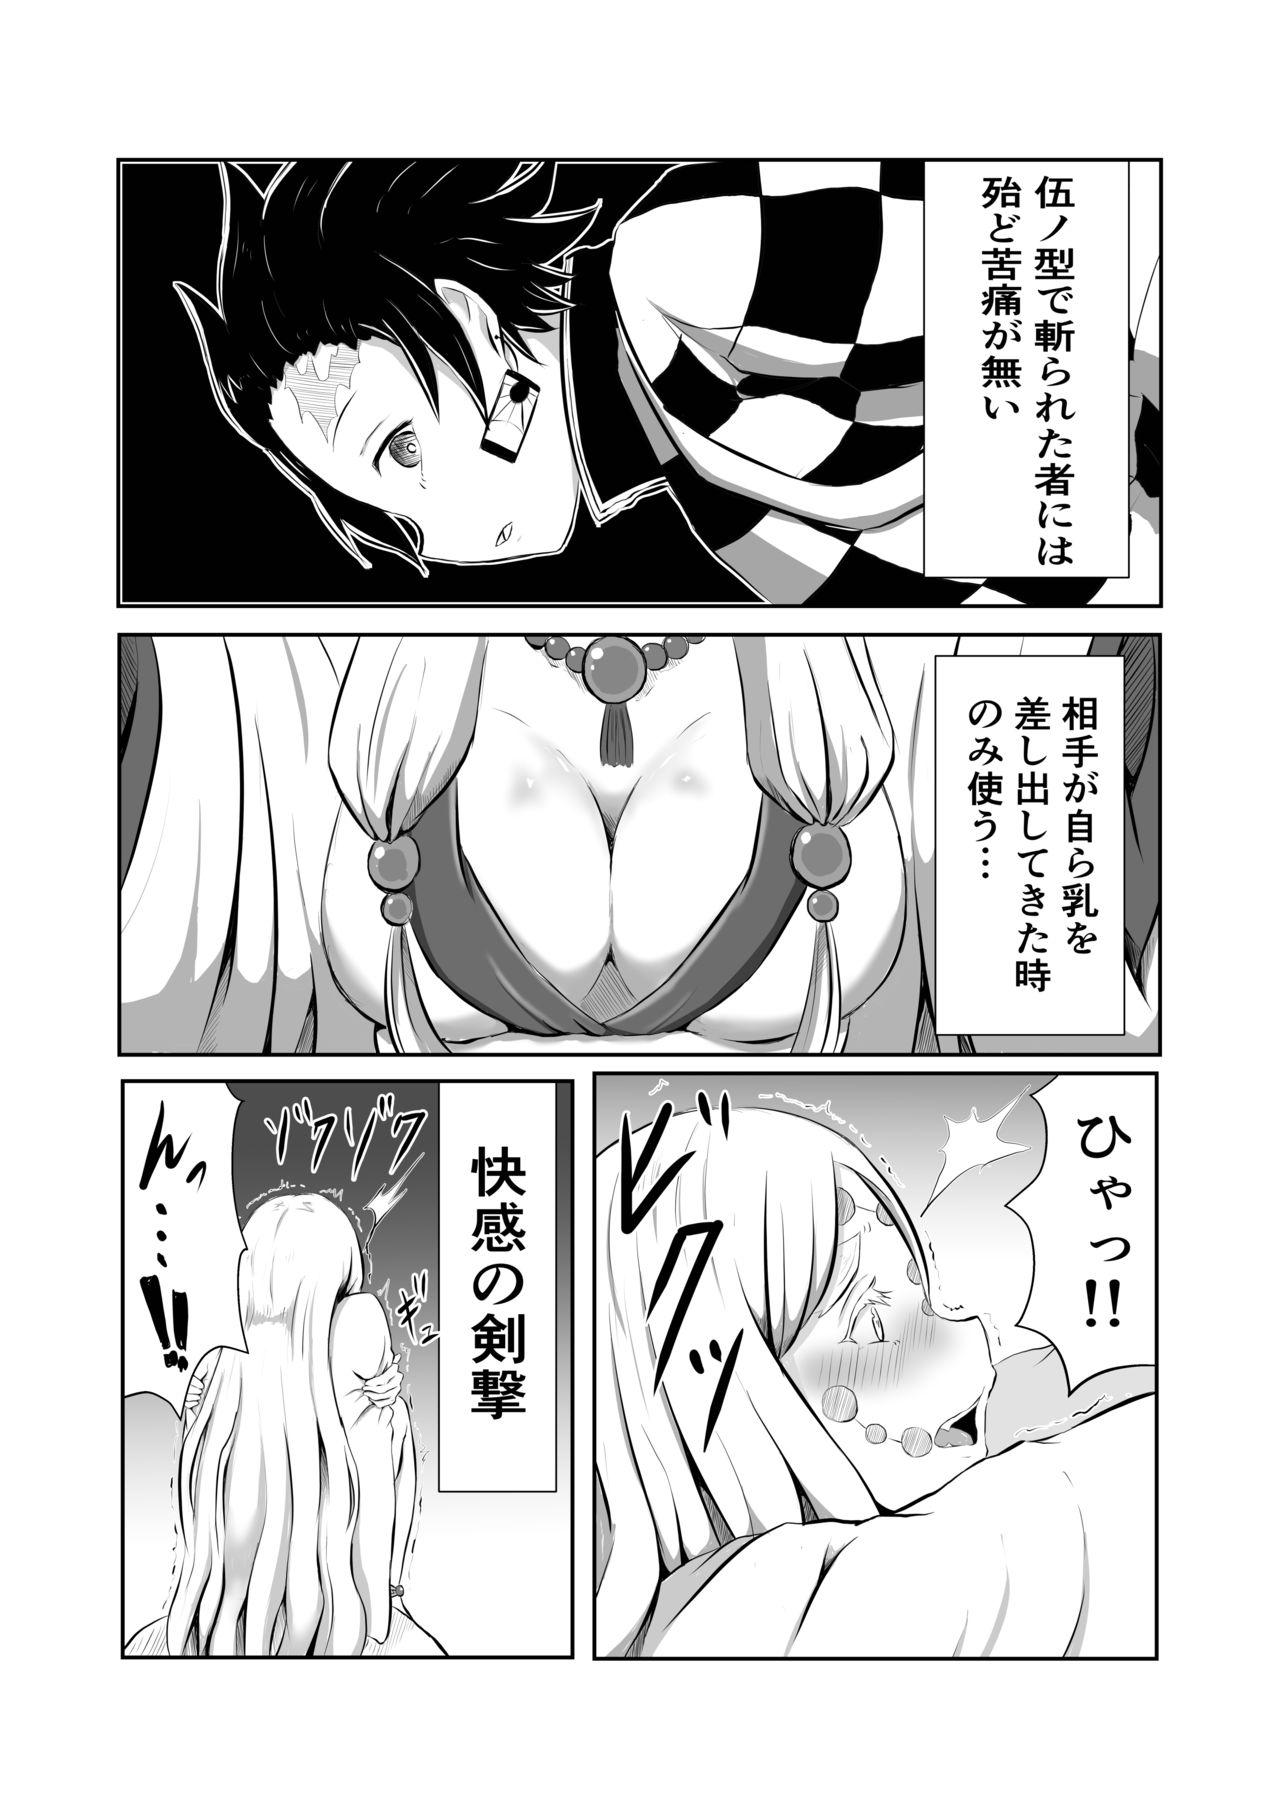 Woman Hinokami Sex. - Kimetsu no yaiba | demon slayer College - Page 4